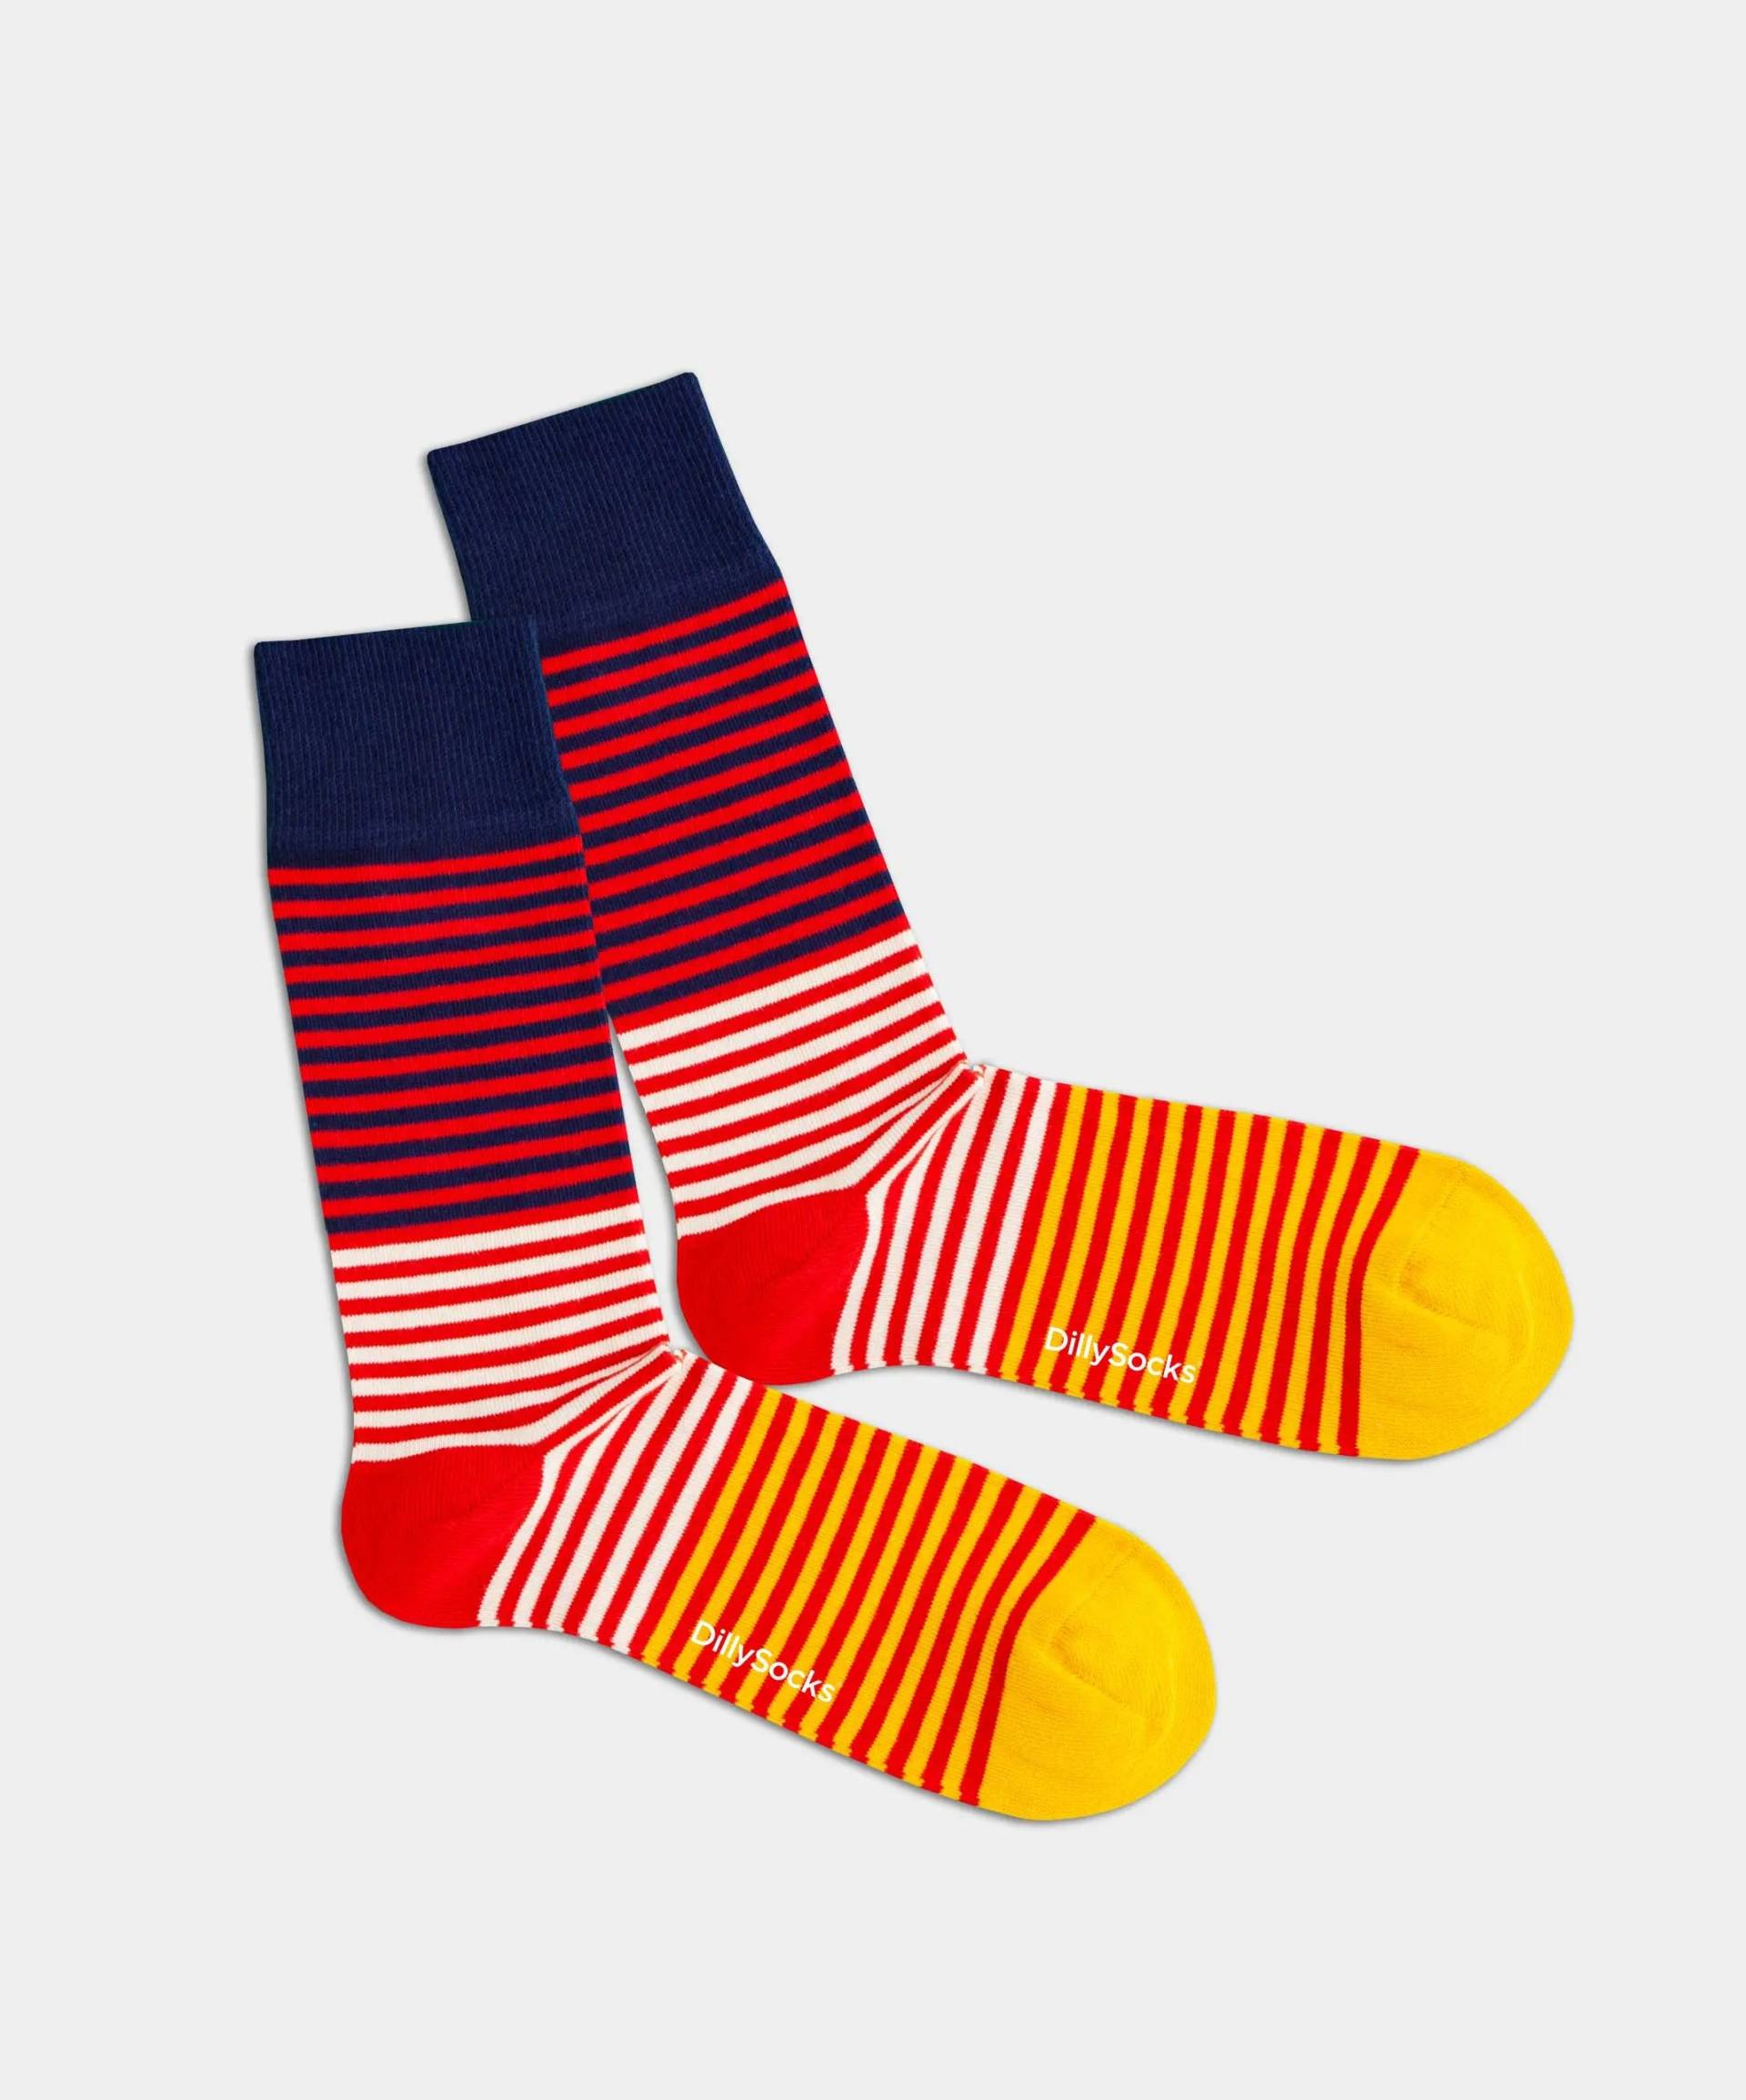 - Socken in Rot mit Streifen Motiv/Muster von DillySocks